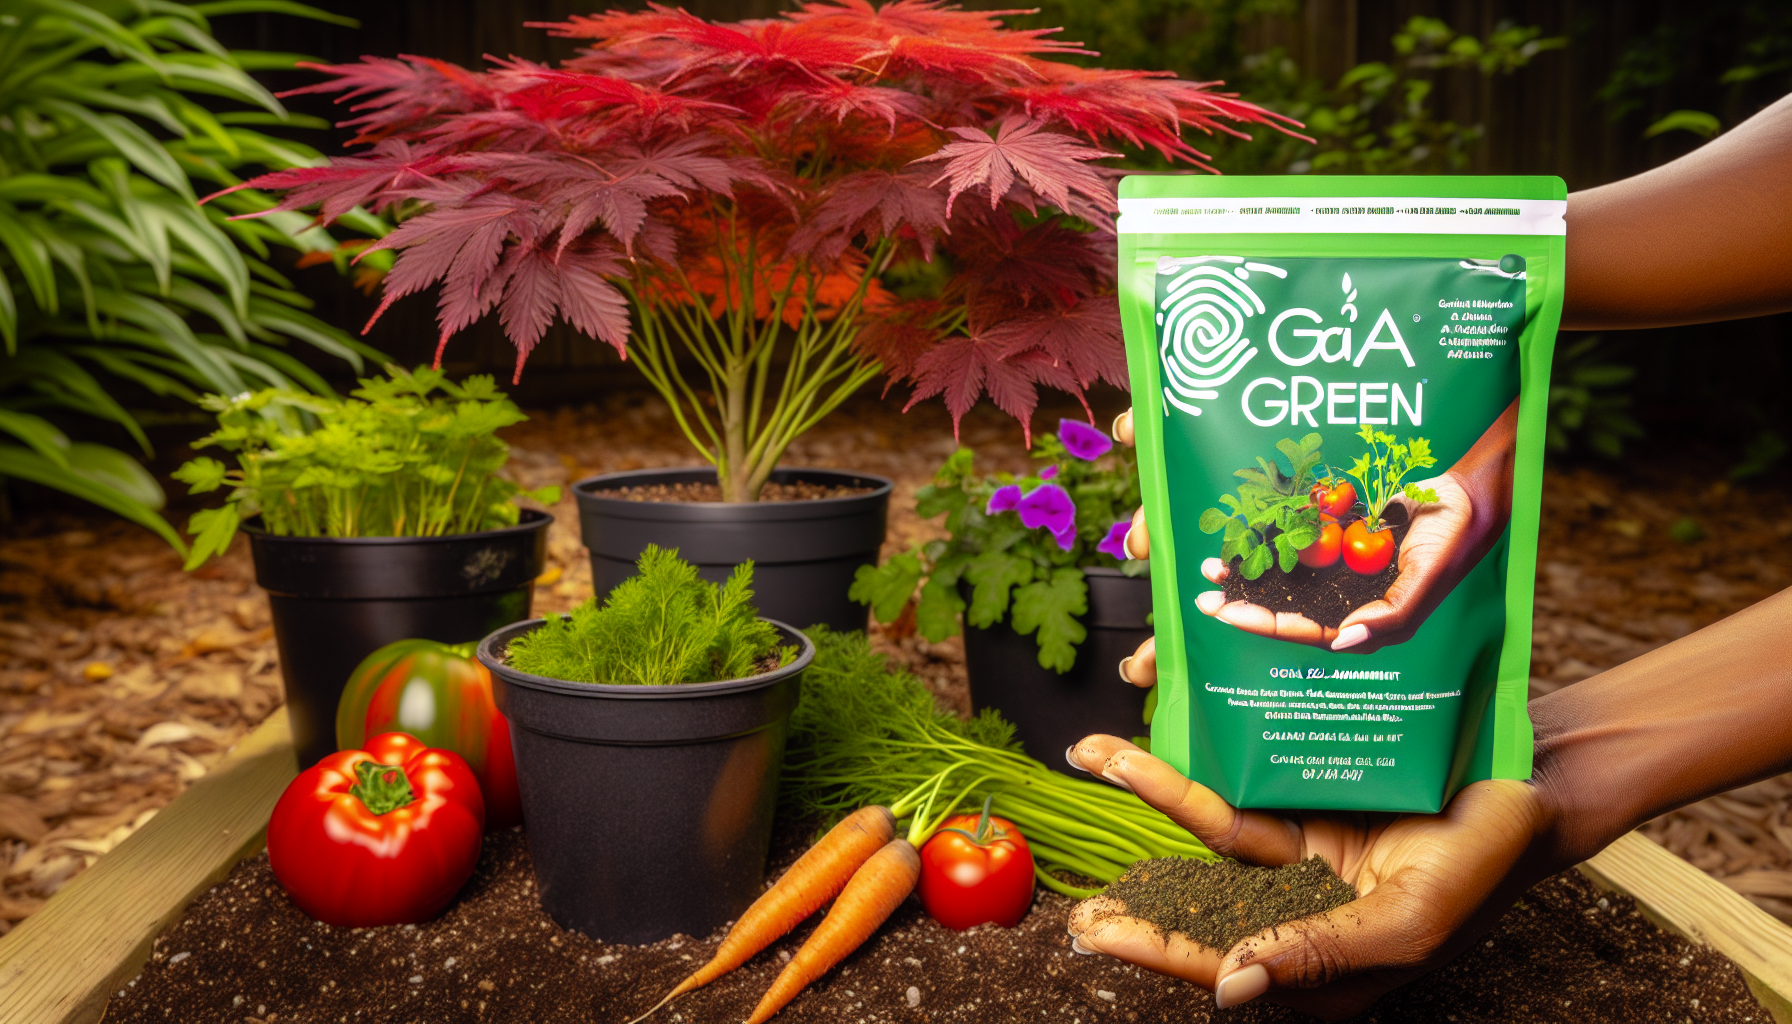 Gaia Green organic soil amendment for cannabis cultivation